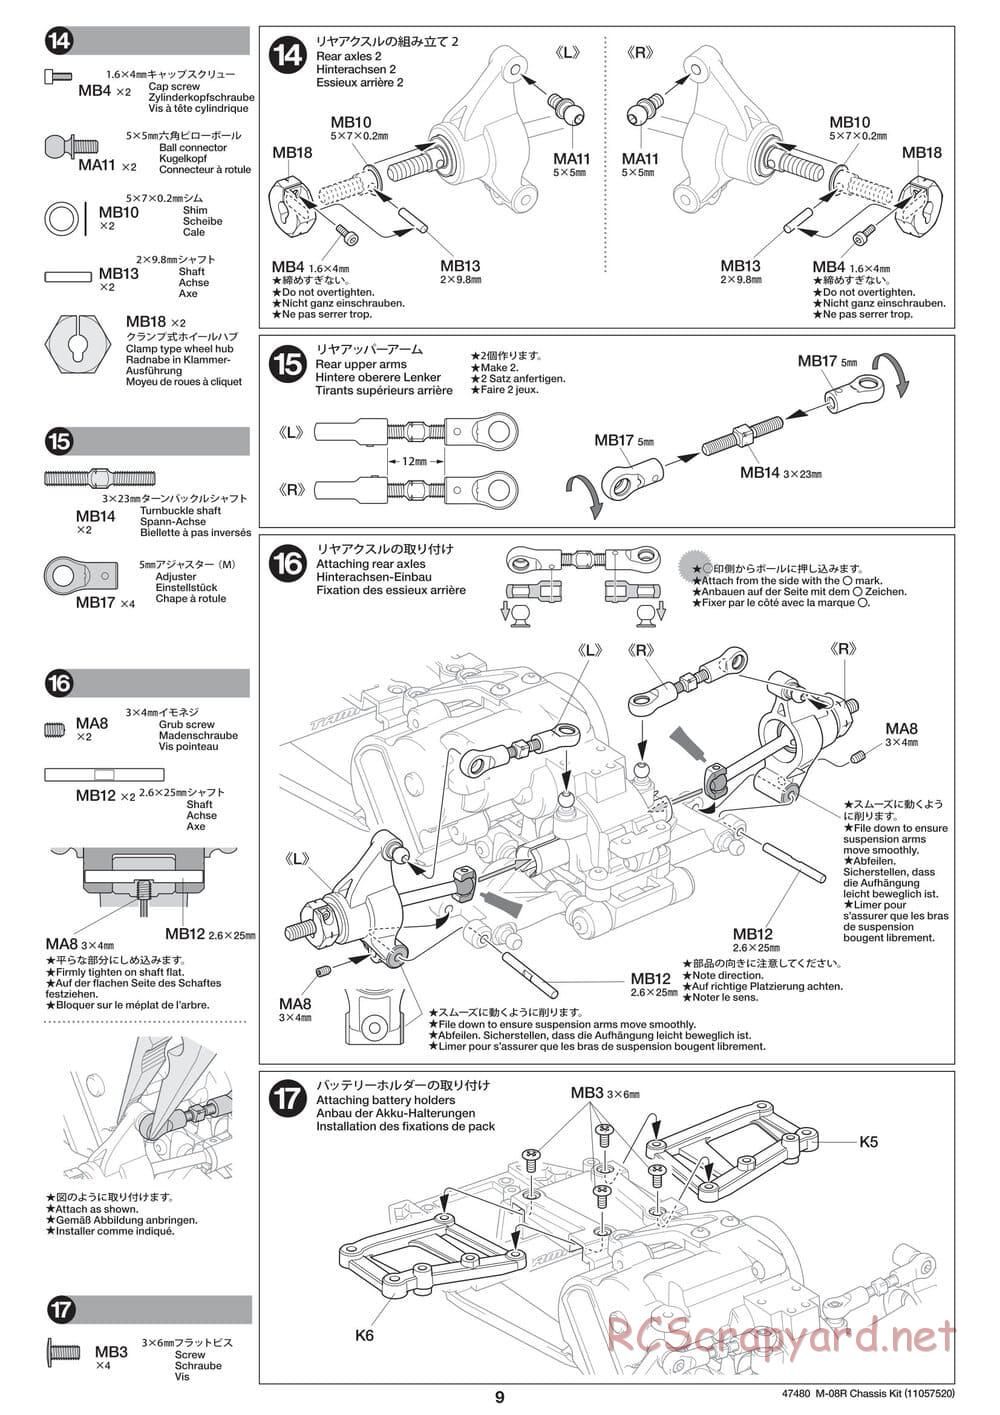 Tamiya - M-08R Chassis - Manual - Page 9